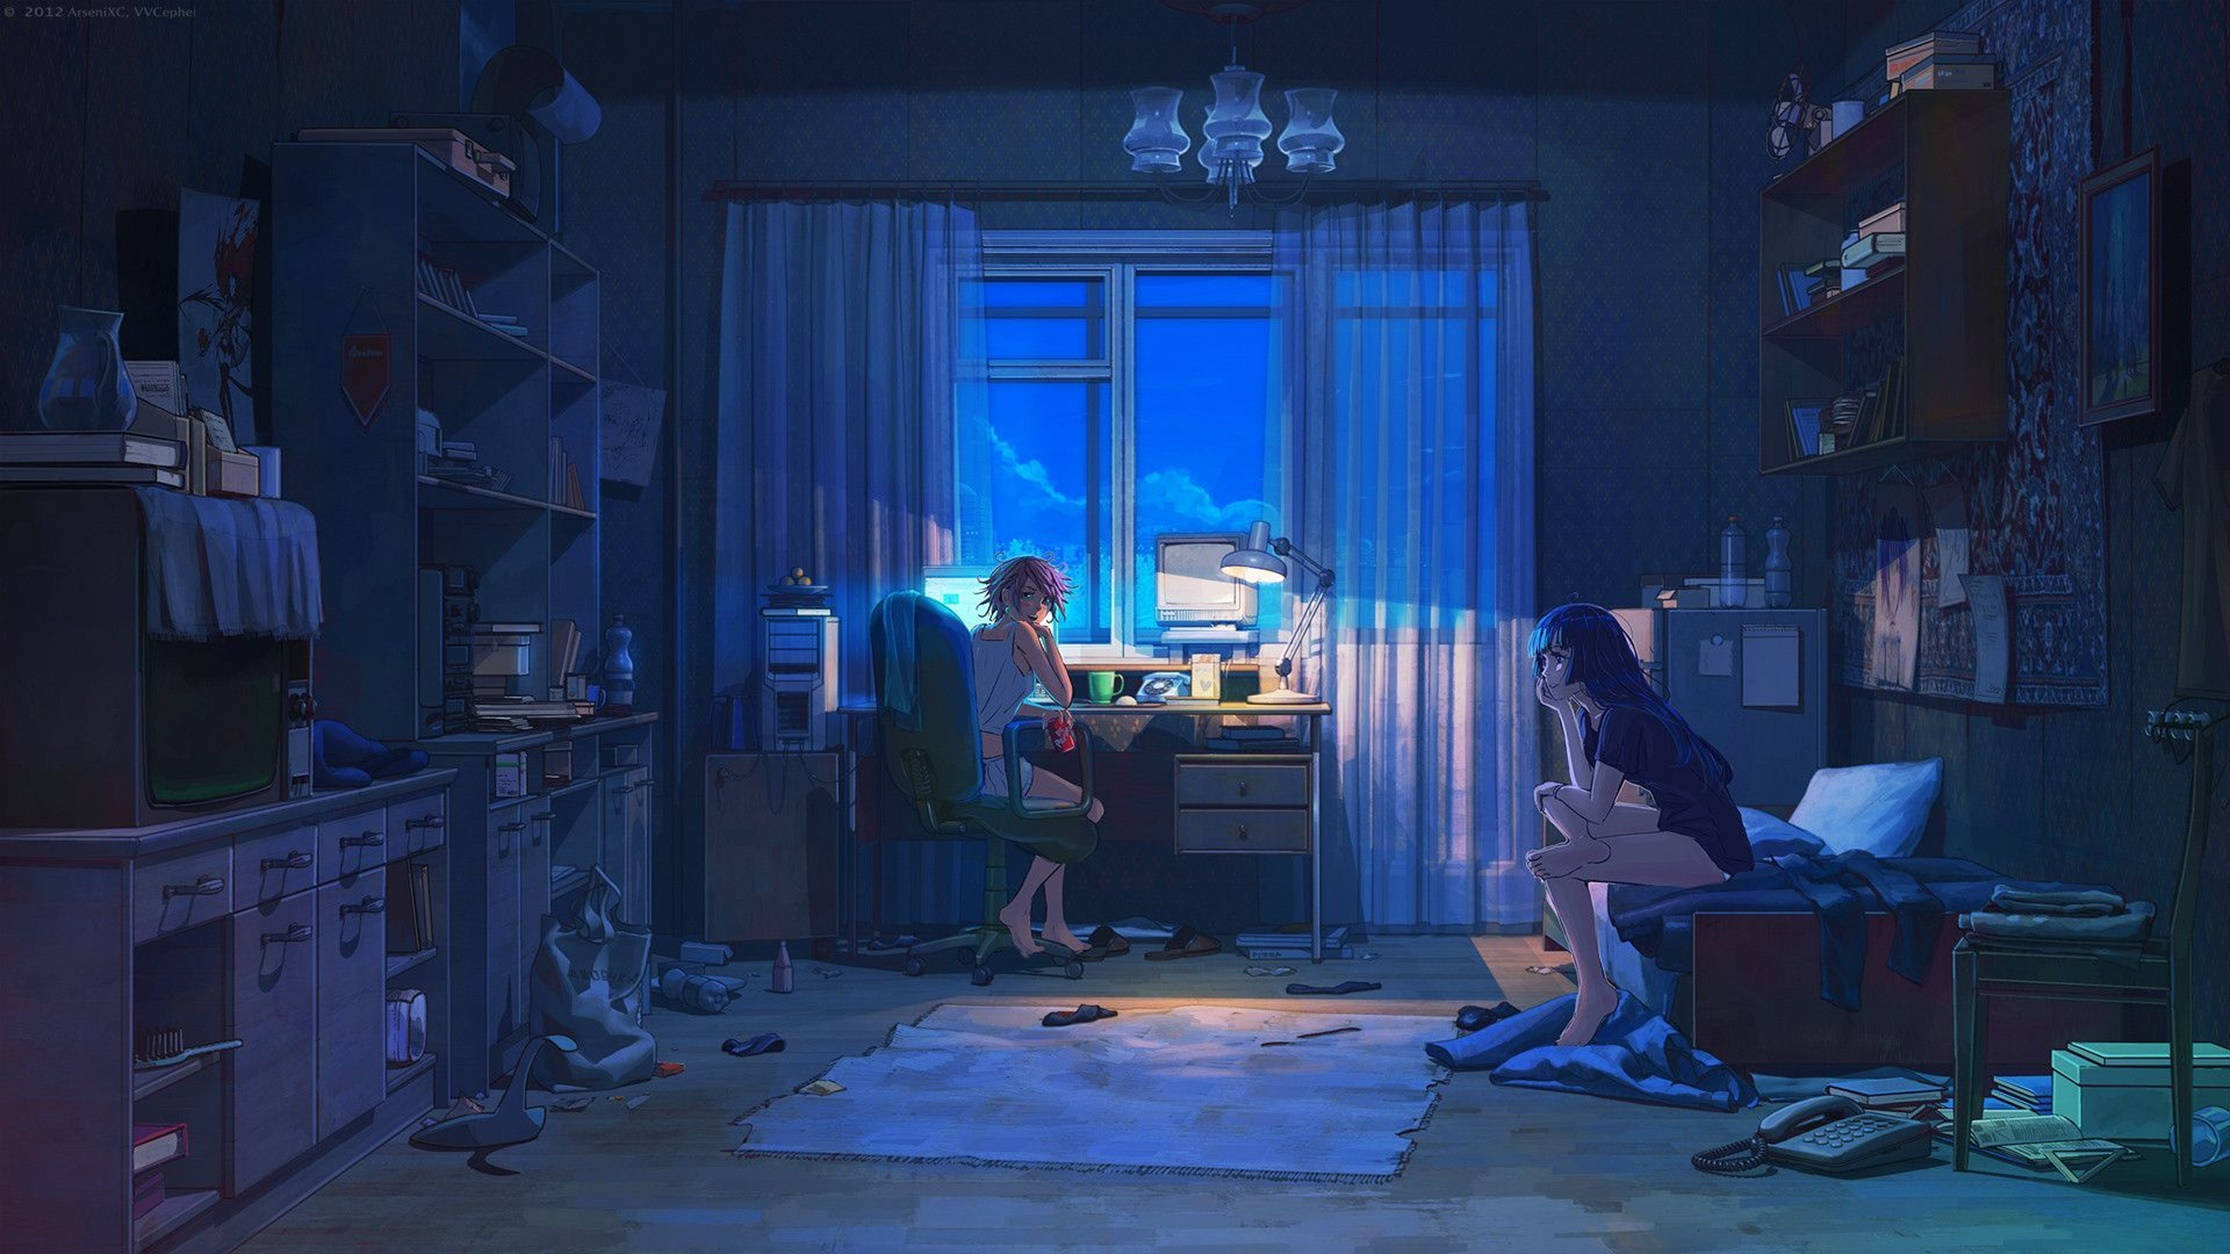 Lo Fi Anime Couple Talking At Night